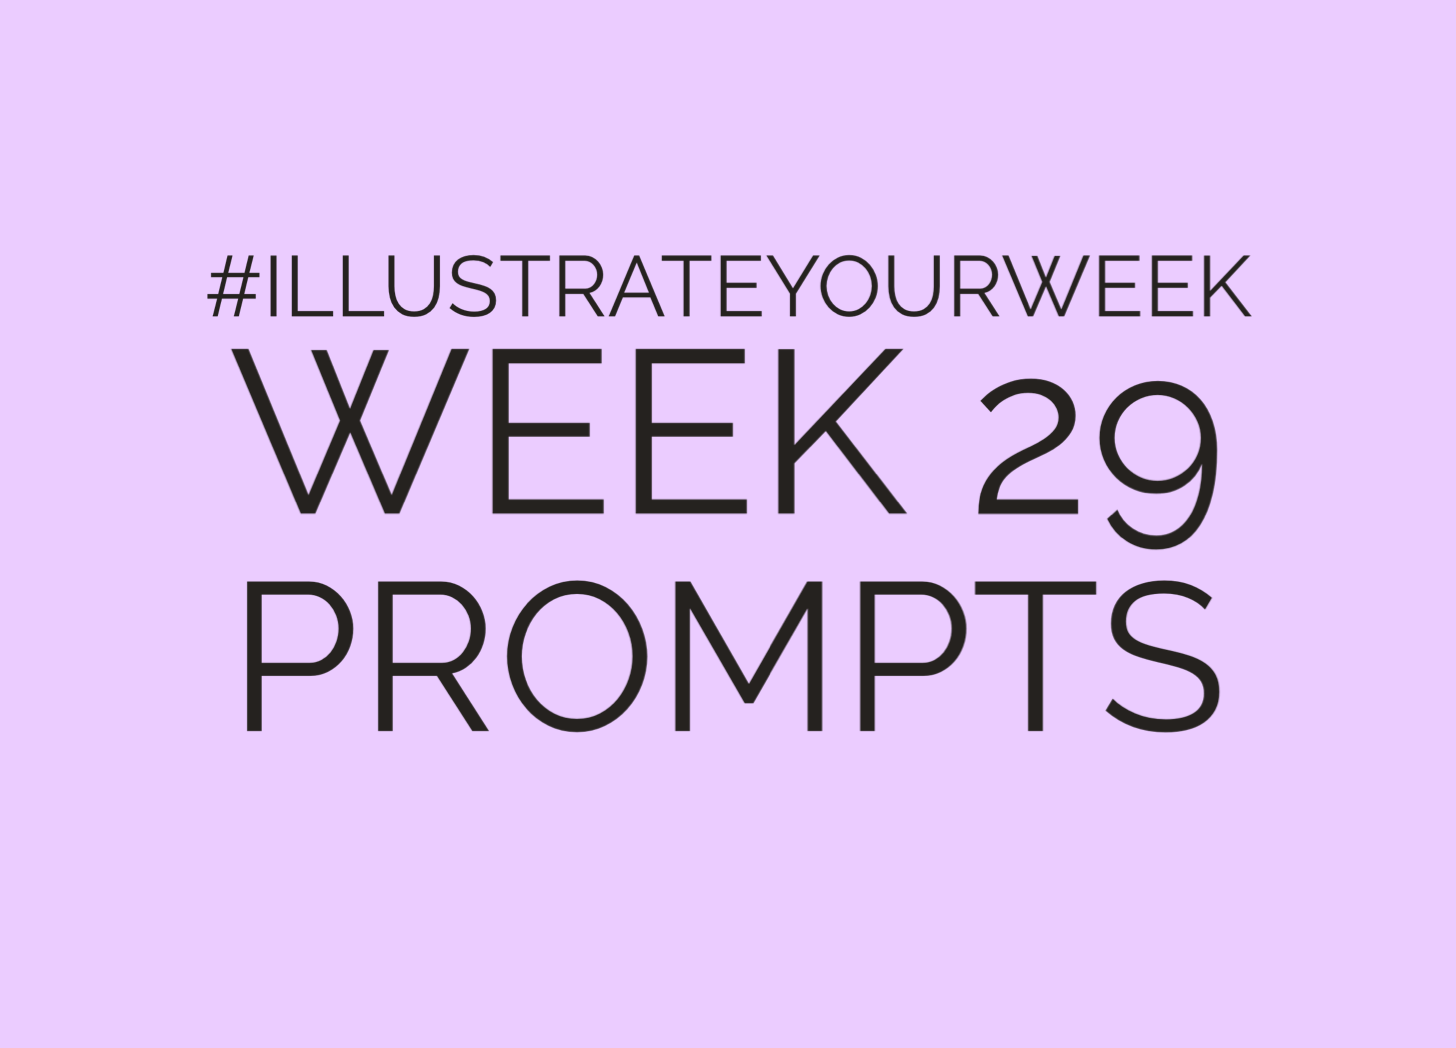 Week 29 Illustrate Your Week Prompts